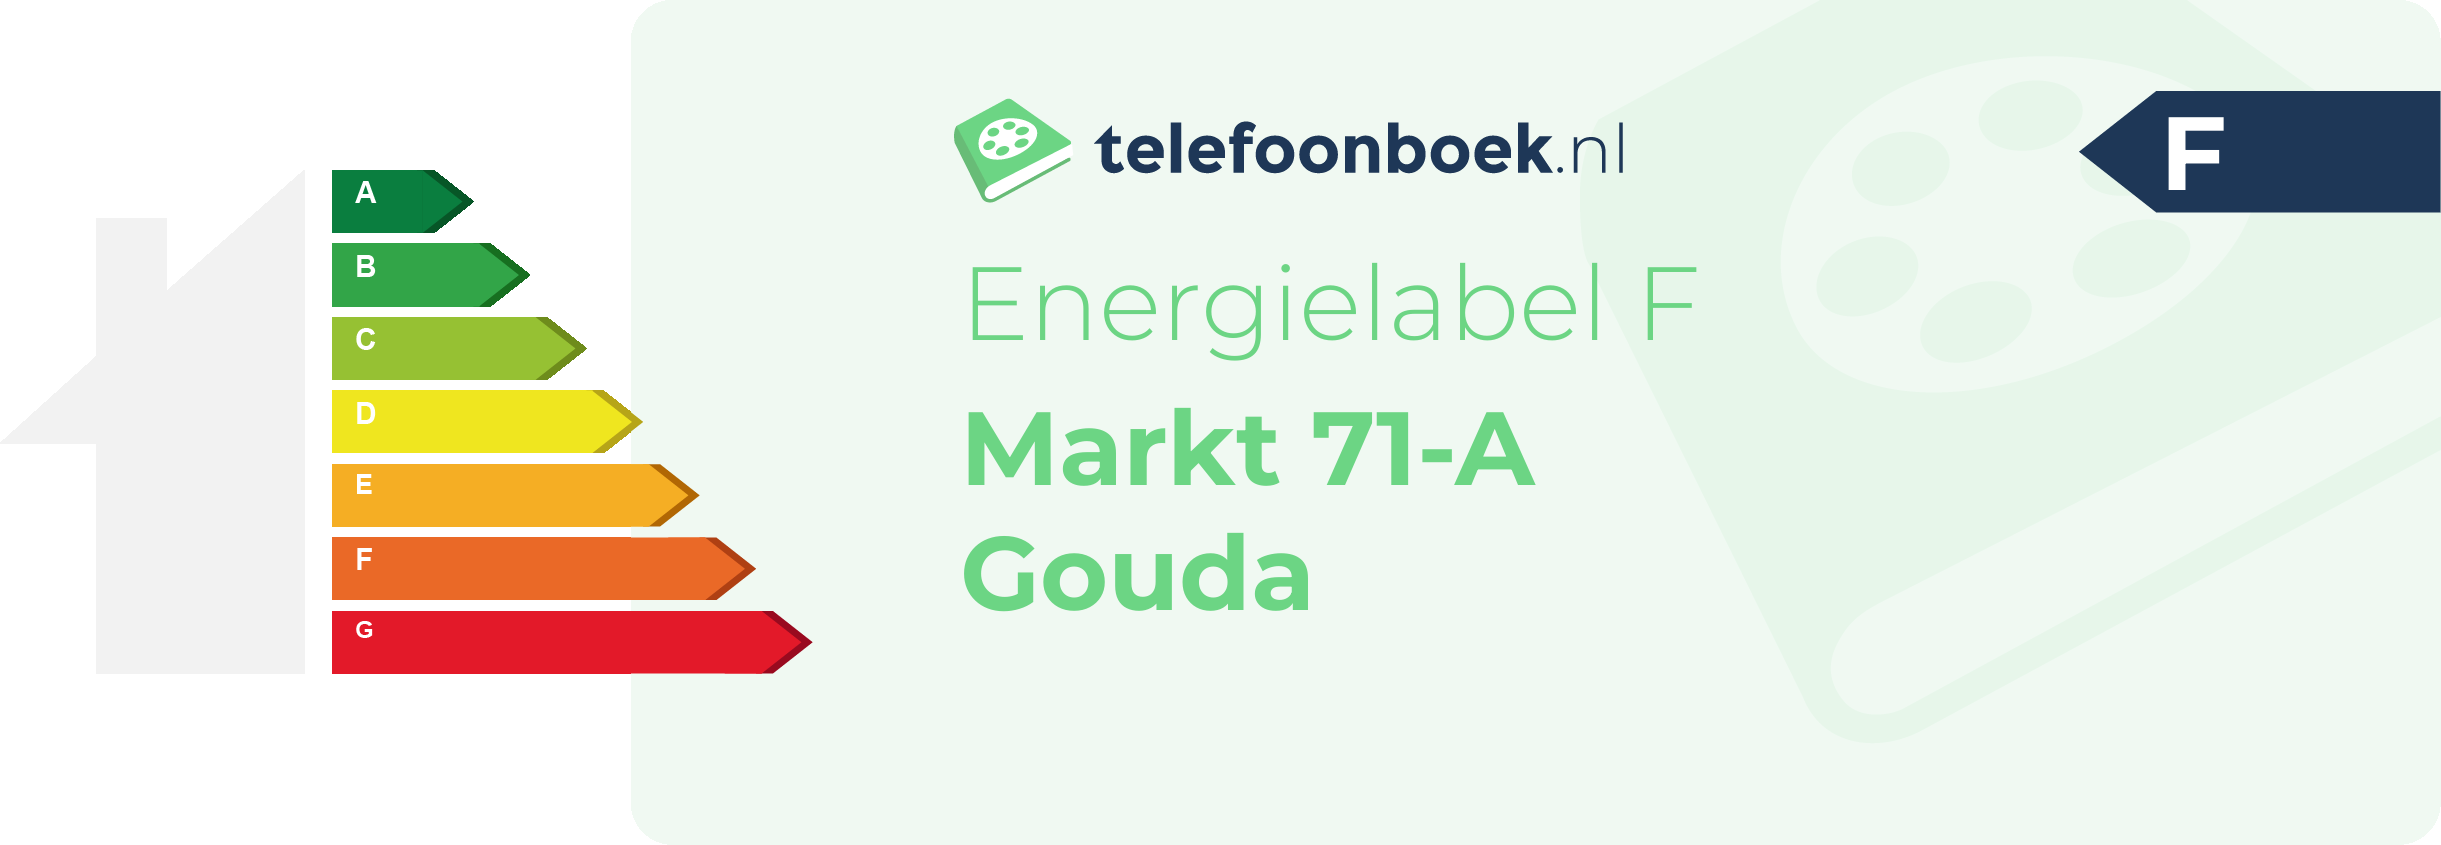 Energielabel Markt 71-A Gouda